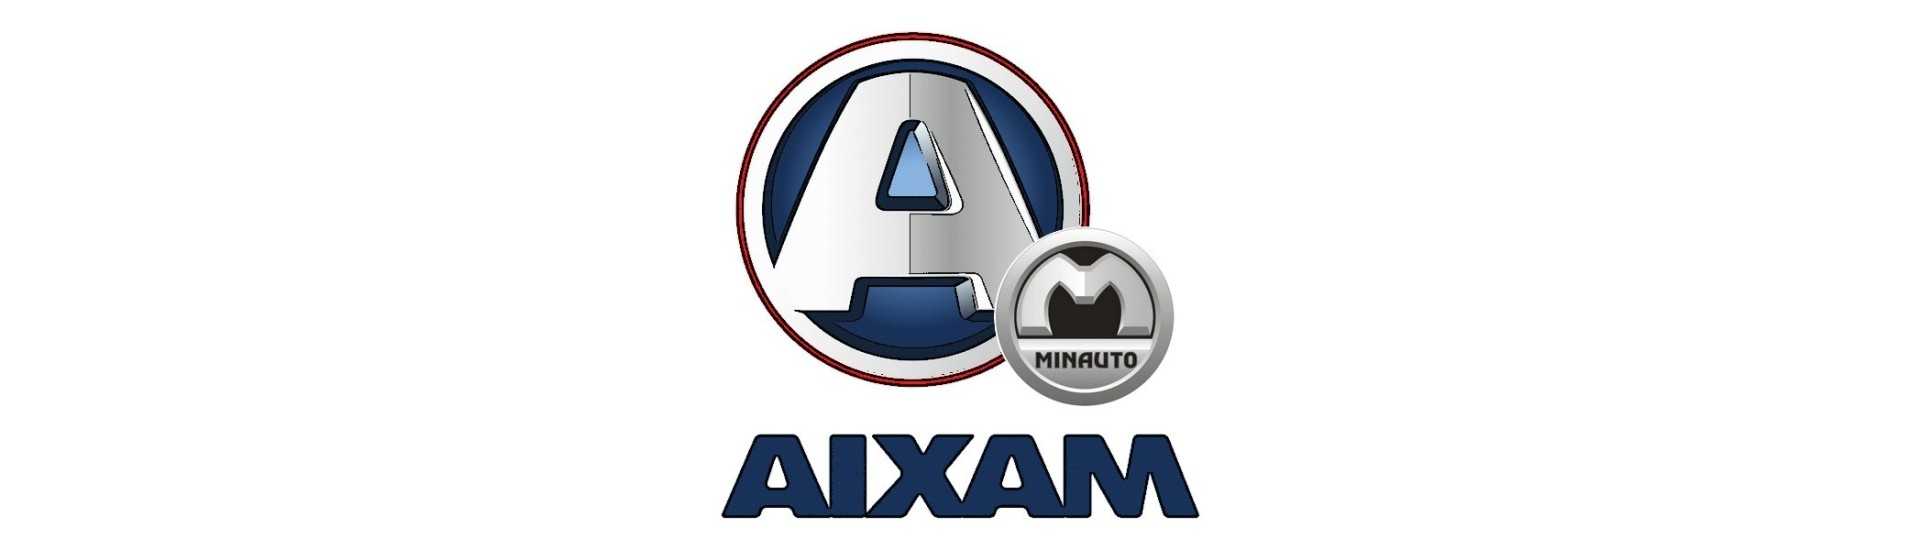 Rückschlüsse zum besten Preis Auto ohne Lizenz Aixam Minauto